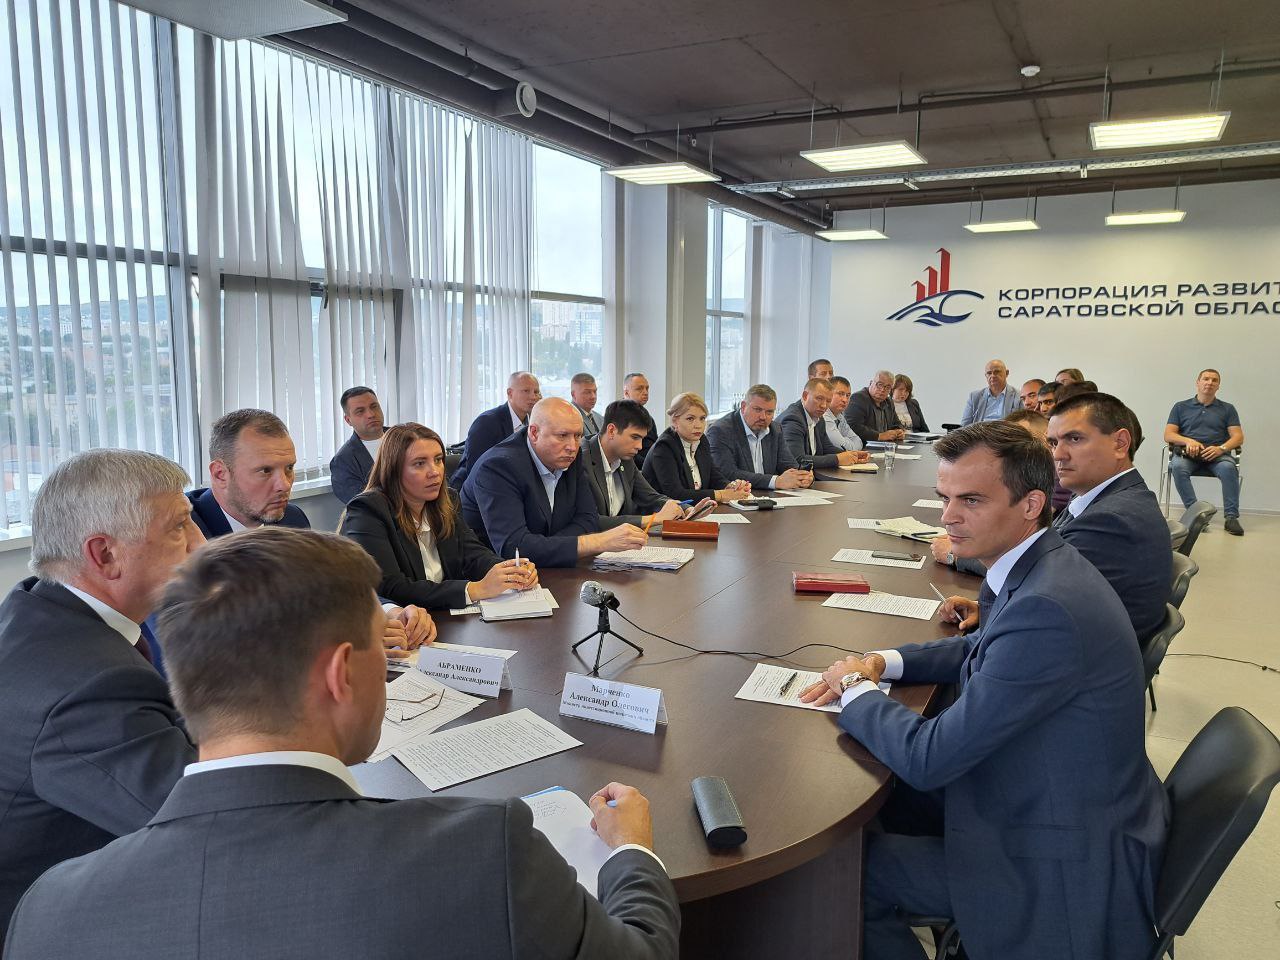 «УК СИП» участвует в собрании инвесткомитета Саратовской области